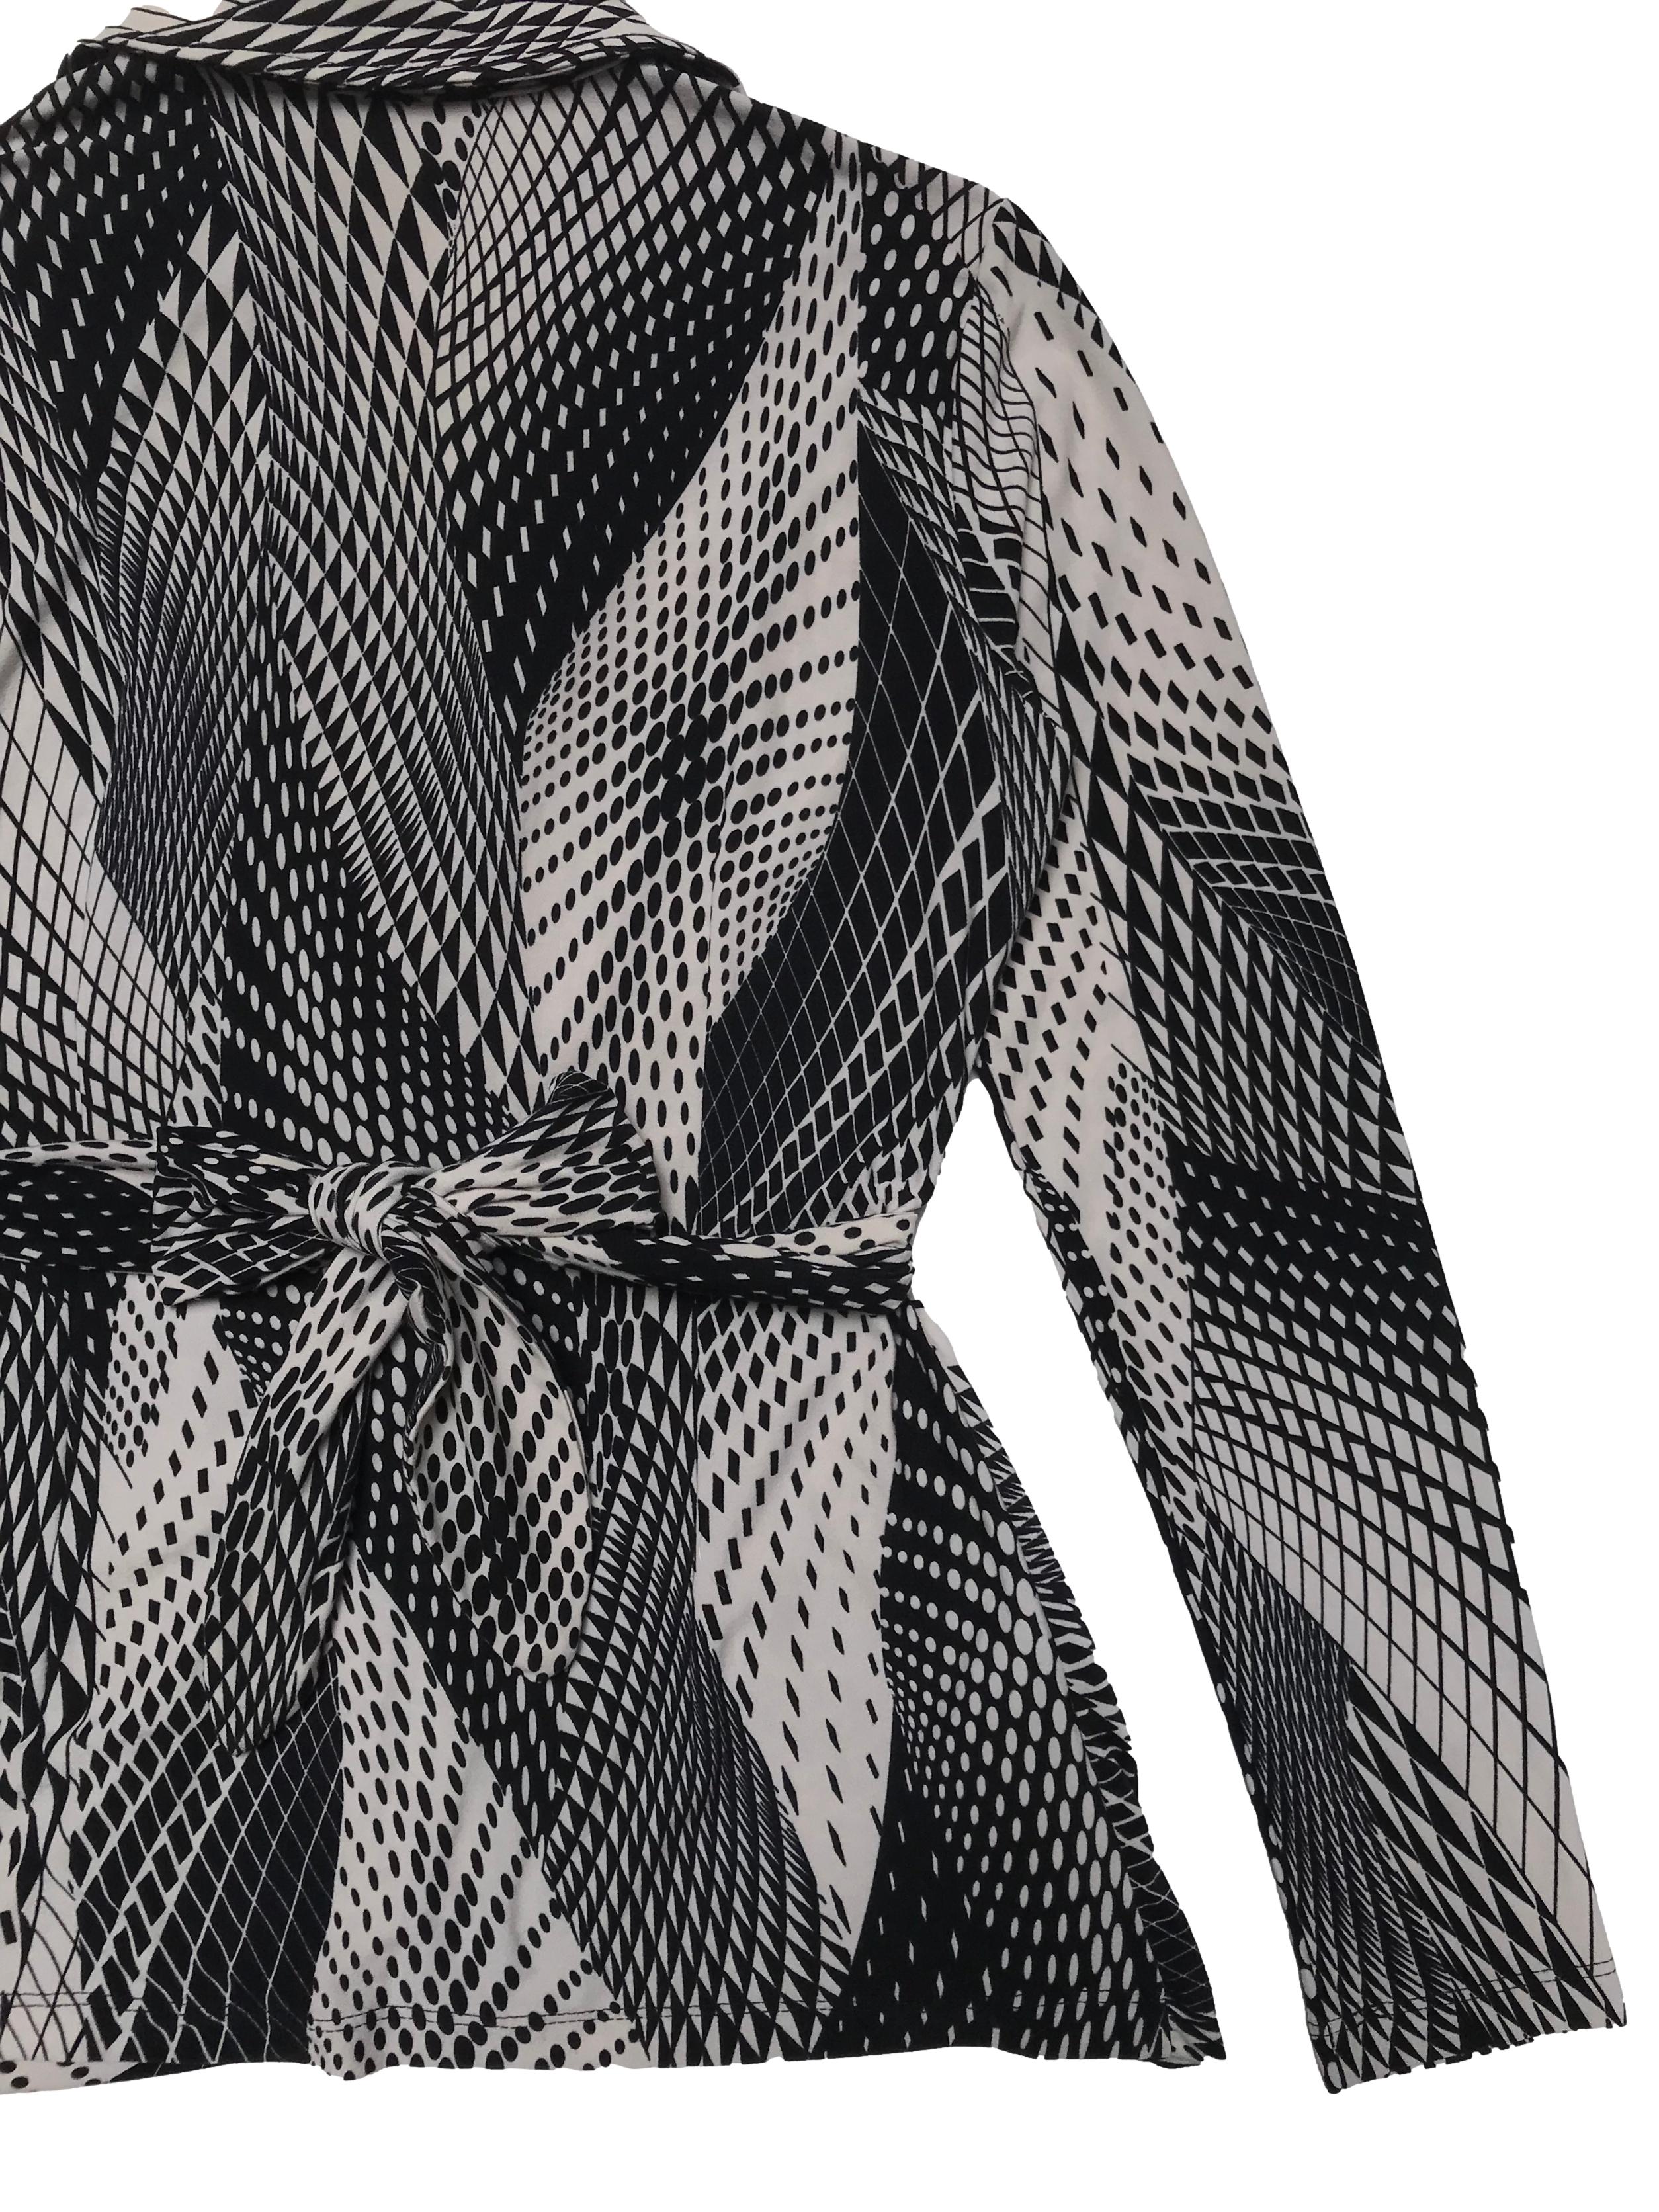 Blusa Joaquim Miro modelo envolvente, tela tipo piel de durazno beige y negro, tiene detalles drapeados. Largo 58cm. Precio original S/ 189